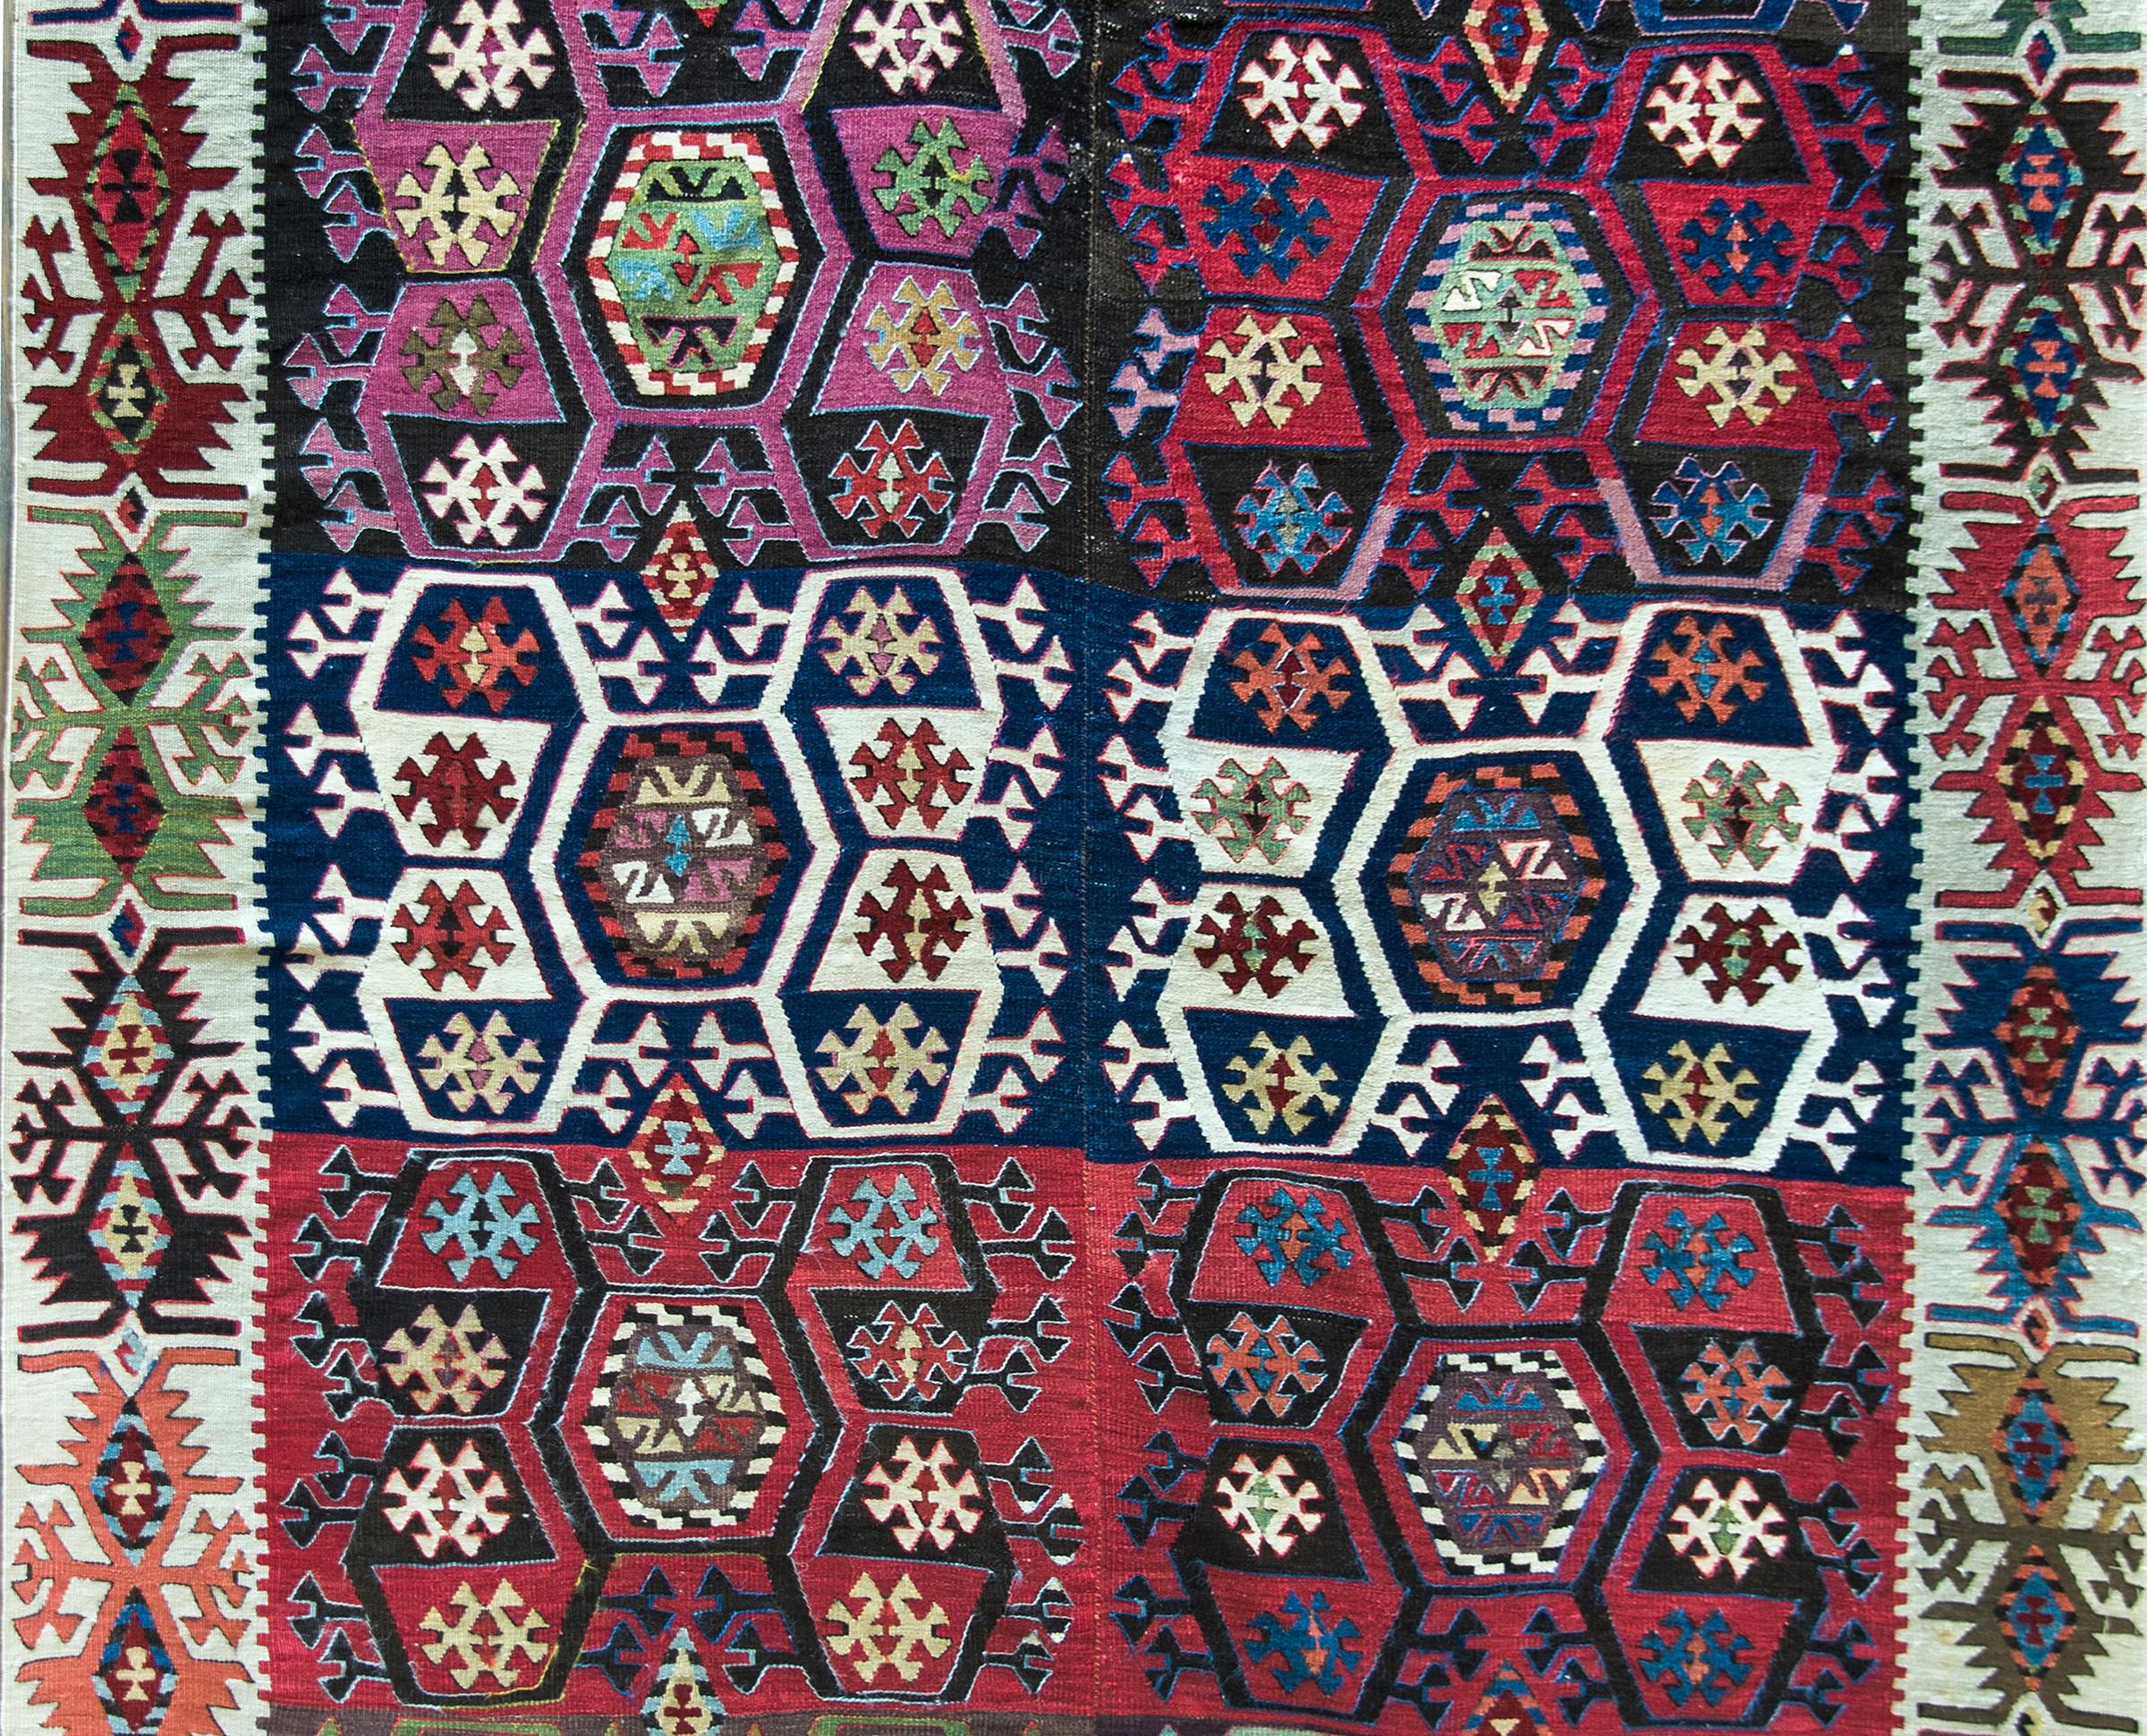 Ein atemberaubender türkischer Kelimteppich aus dem frühen 20. Jahrhundert aus Anatolien mit einem wunderschönen stilisierten Krabbenmuster in unzähligen leuchtenden Farben, gewebt in zwei schmalen Bahnen, die zusammengenäht wurden. Die Bordüre ist